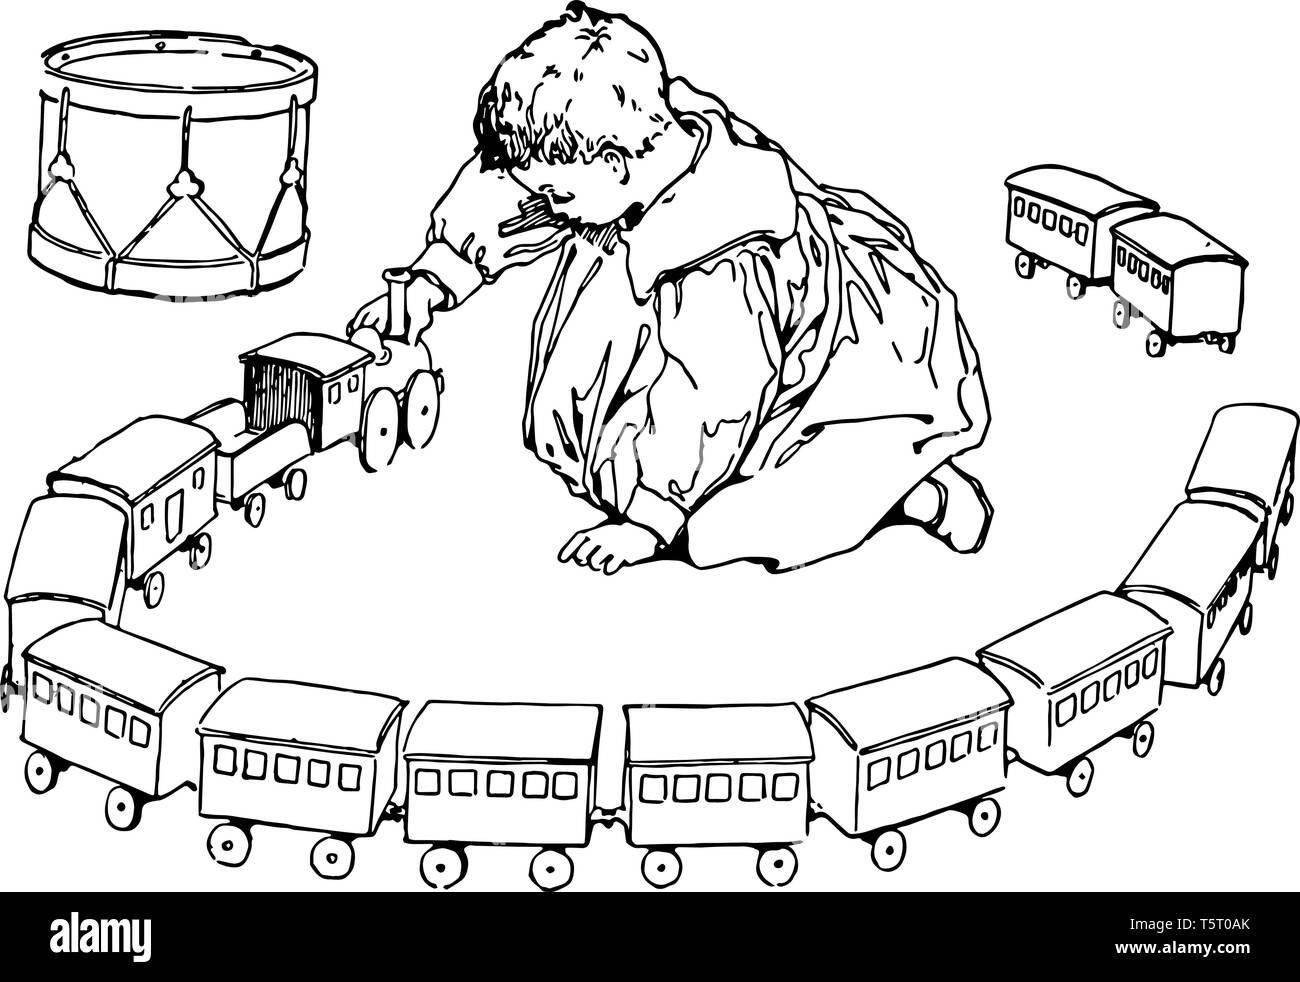 Un bambino che gioca con il suo toy train e due blocchi del treno non sono collegati da dietro, vintage disegno della linea di incisione o illustrazione. Illustrazione Vettoriale